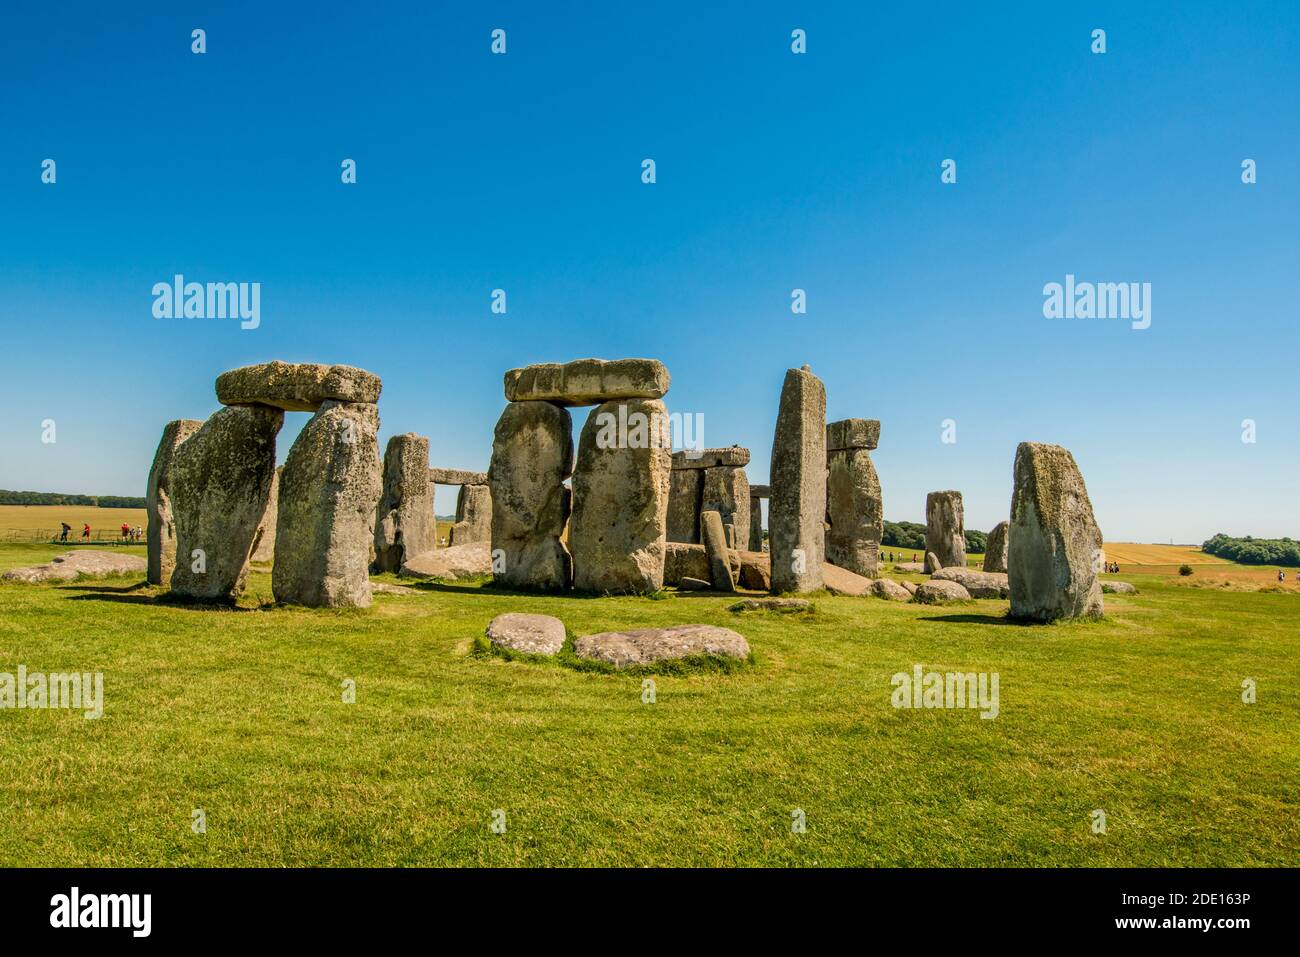 Monument néolithique de Stonehenge, site classé au patrimoine mondial de l'UNESCO, plaine de Salisbury, Salisbury, Wiltshire, Angleterre, Royaume-Uni, Europe Banque D'Images